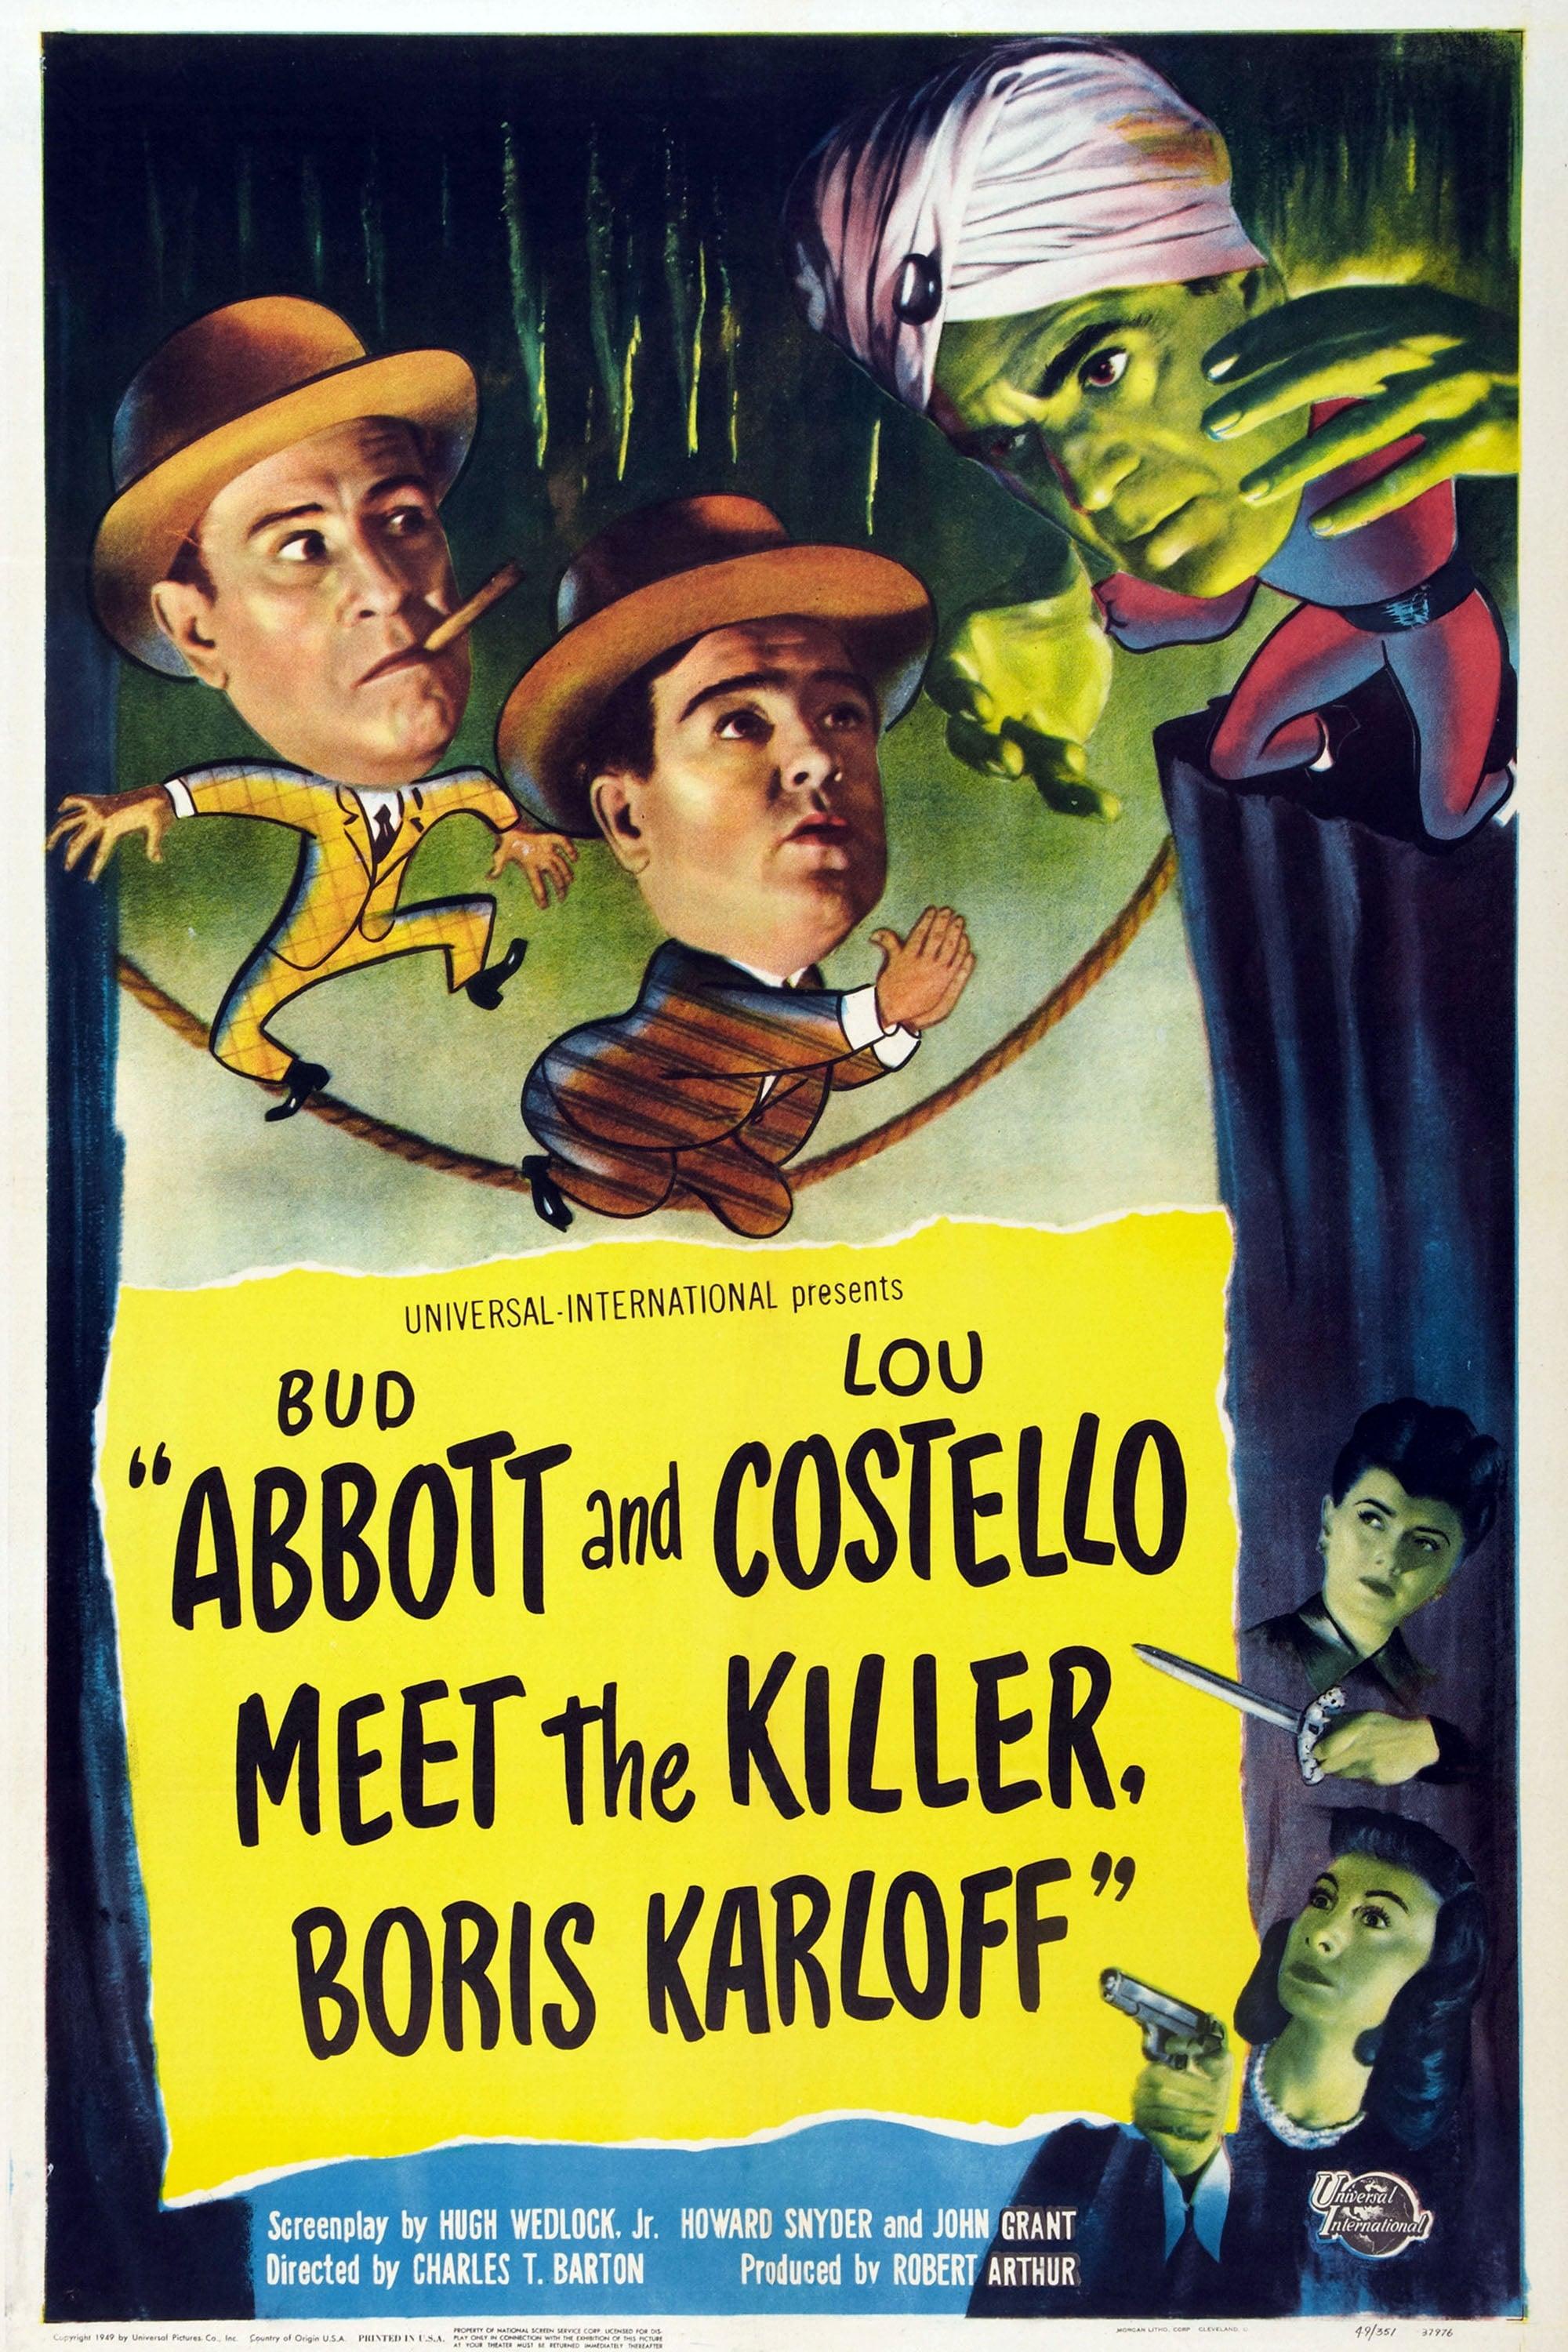 Abbott and Costello Meet the Killer, Boris Karloff poster